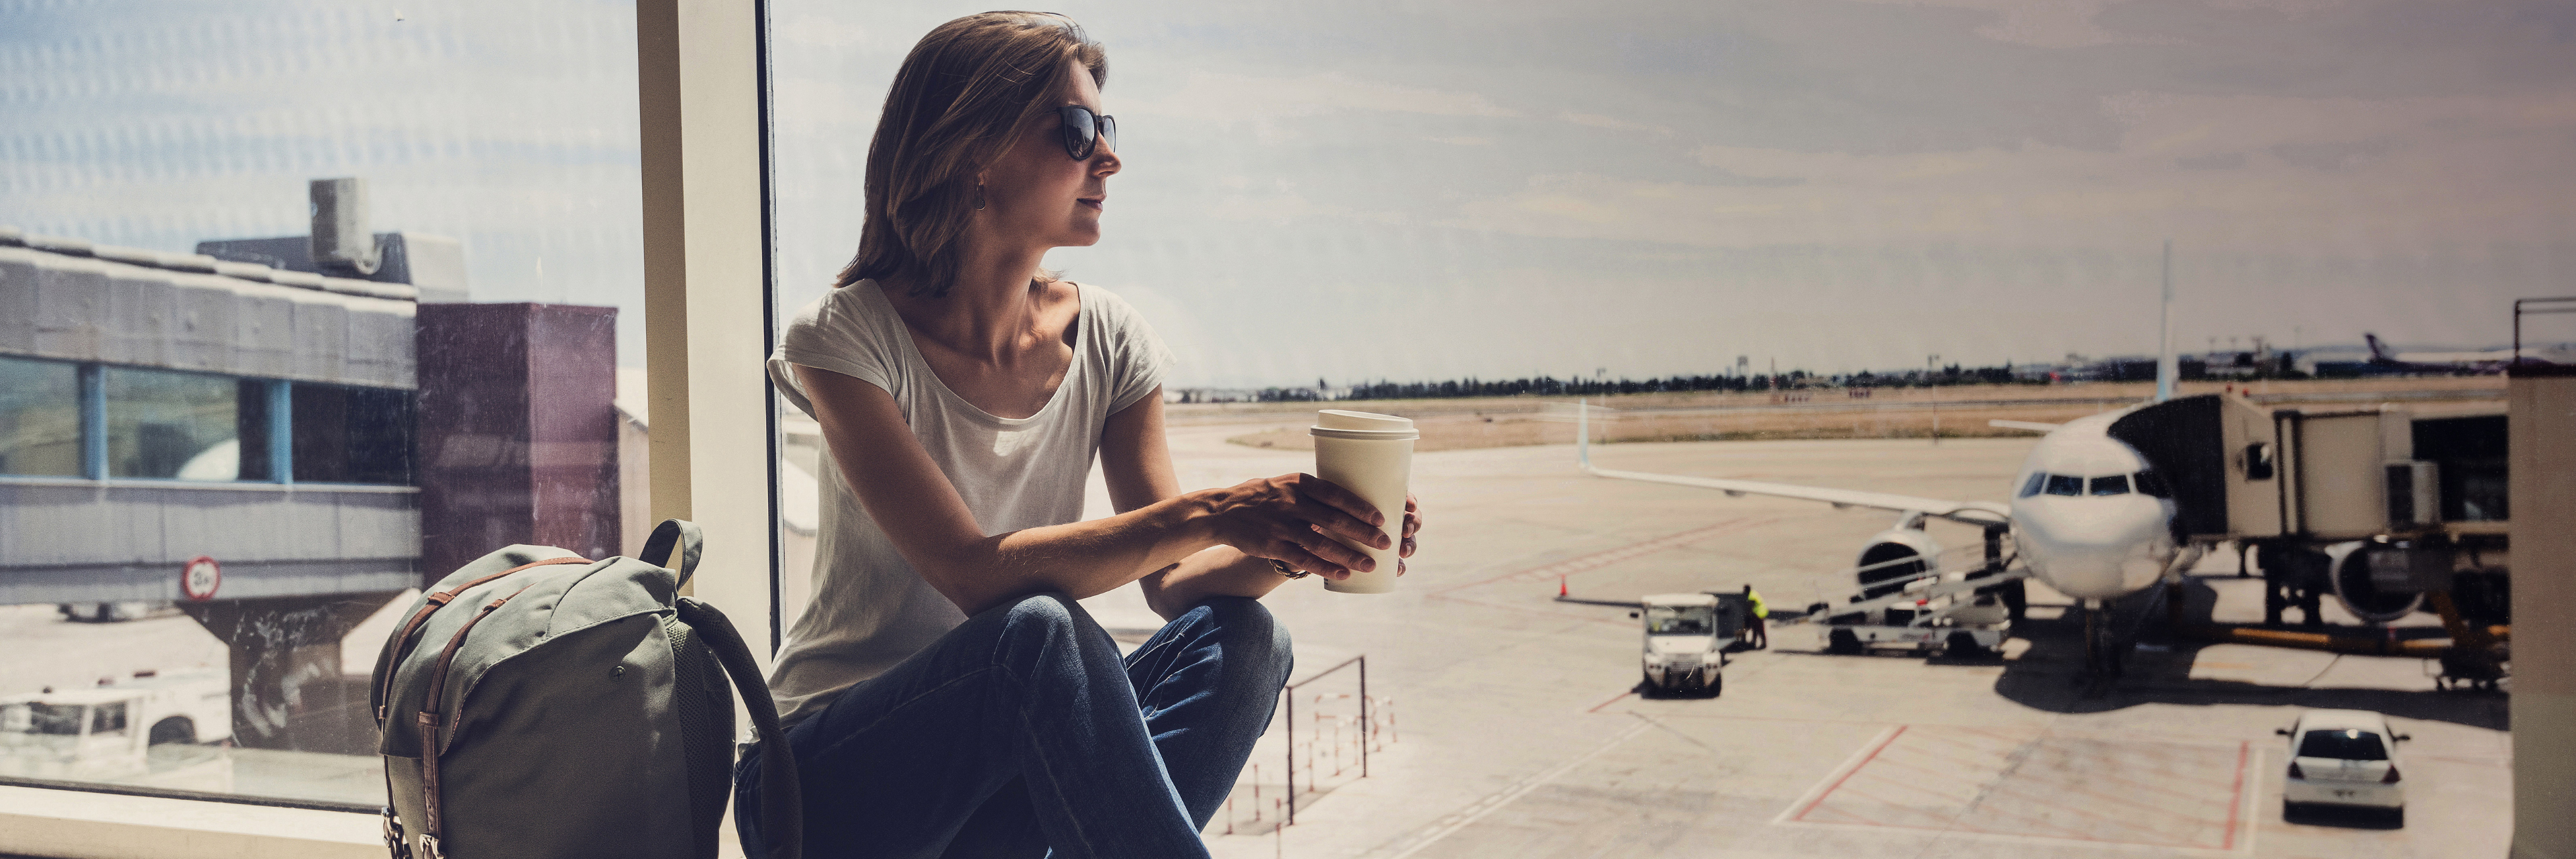 Een vrouw met rugzak drinkt koffie op het vliegveld